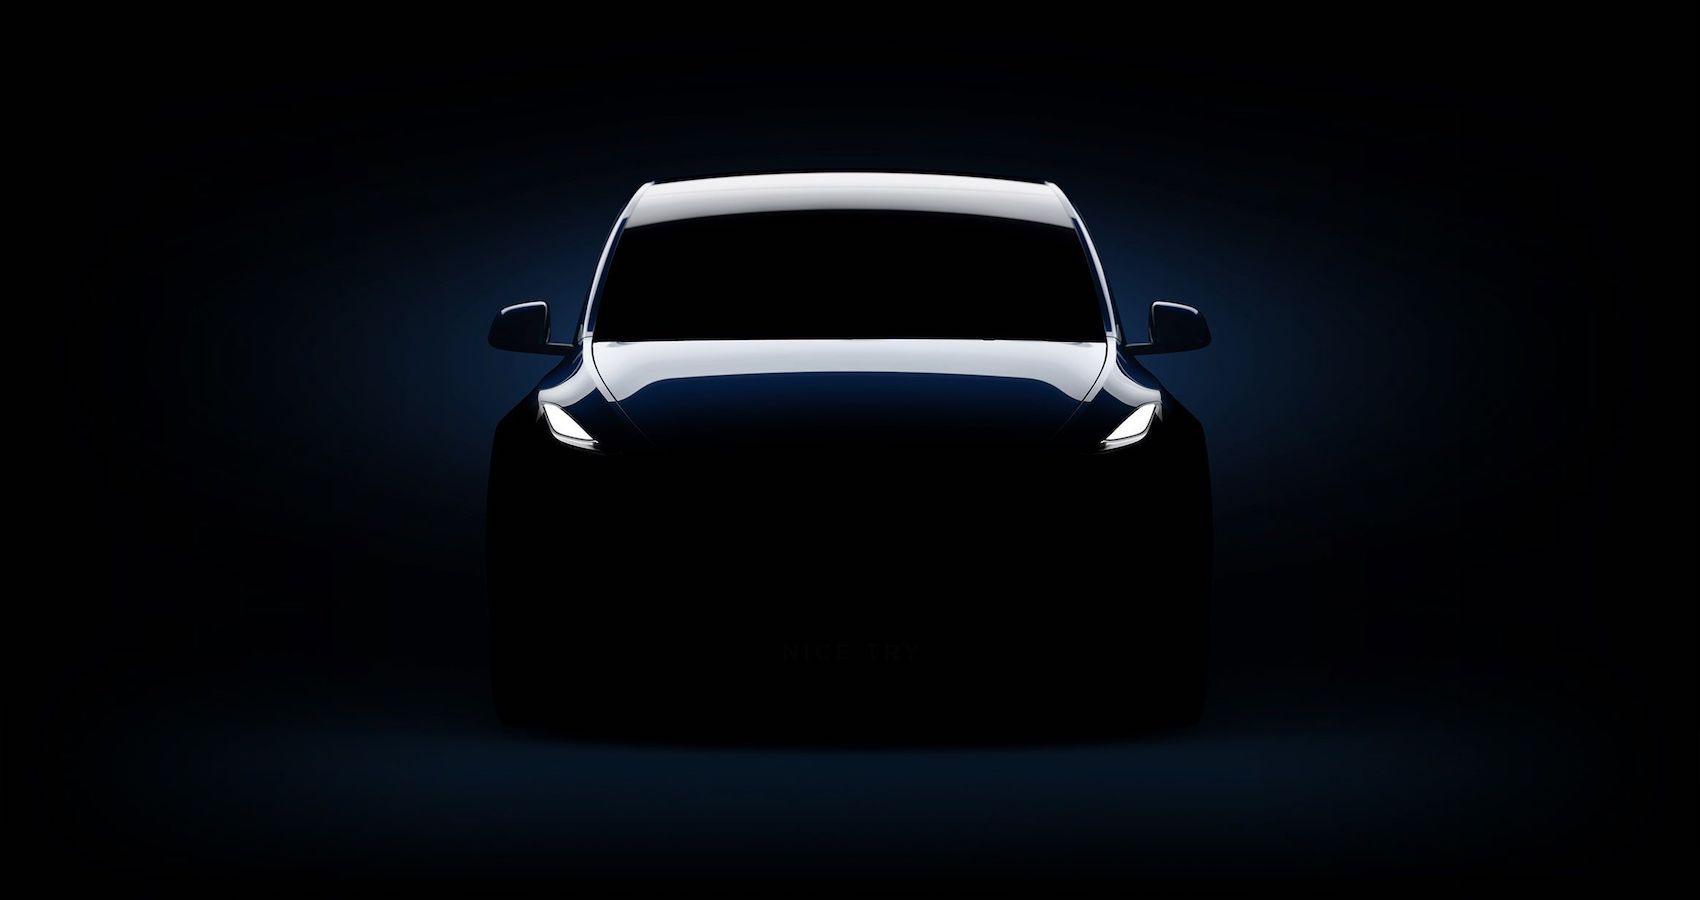 Tesla model y teaser front end in dark room 